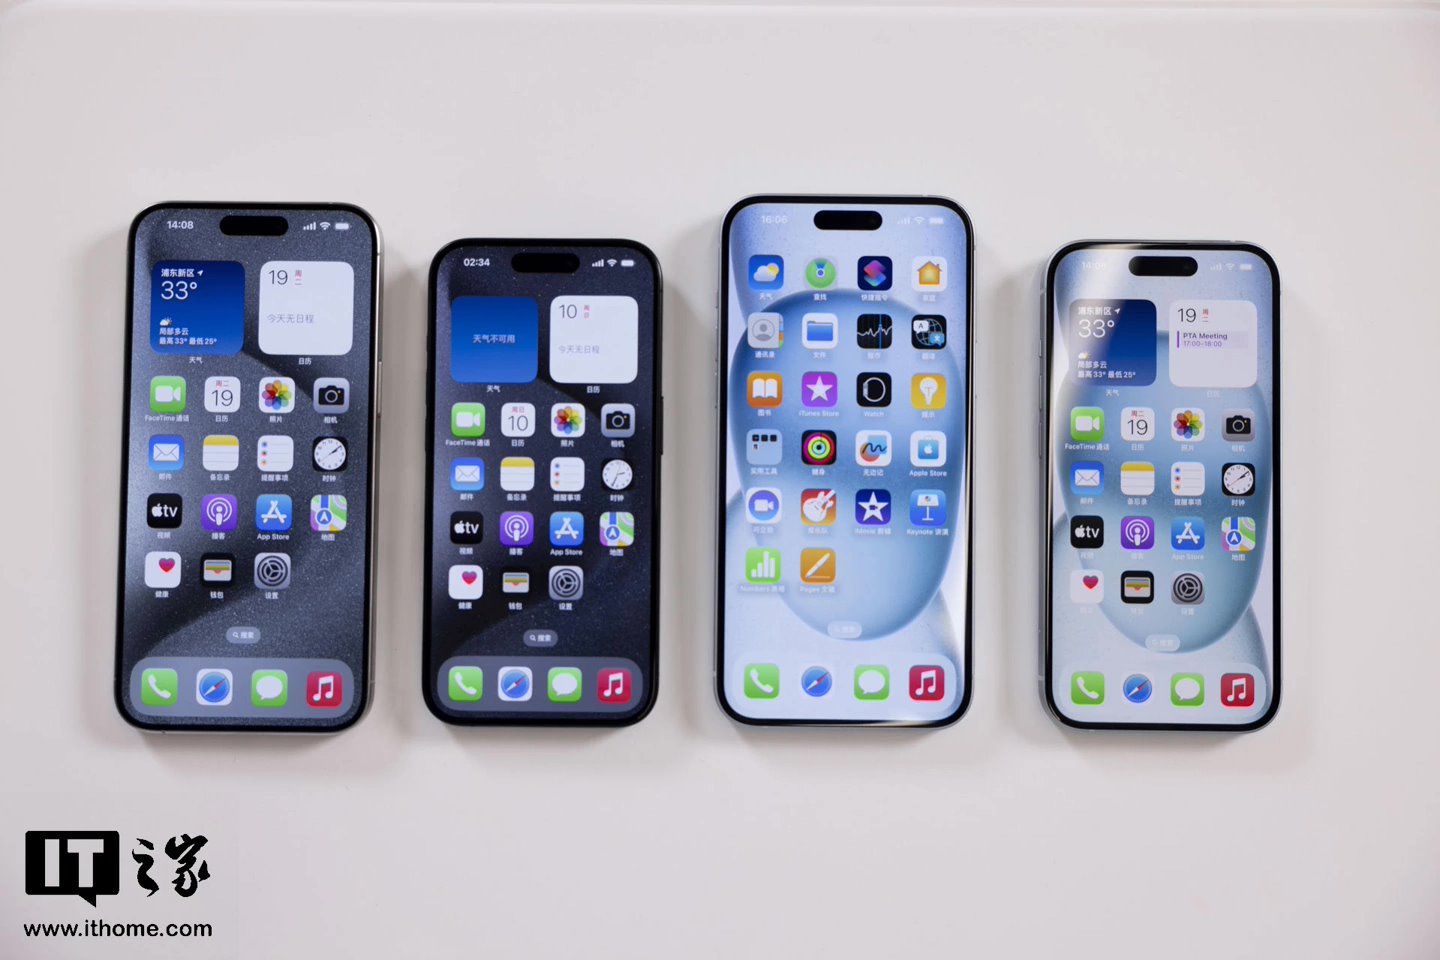 富士康停产风波让苹果一头扎进 iPhone 生产自动化：组装工锐减 50%、全面替代仍存挑战  第2张